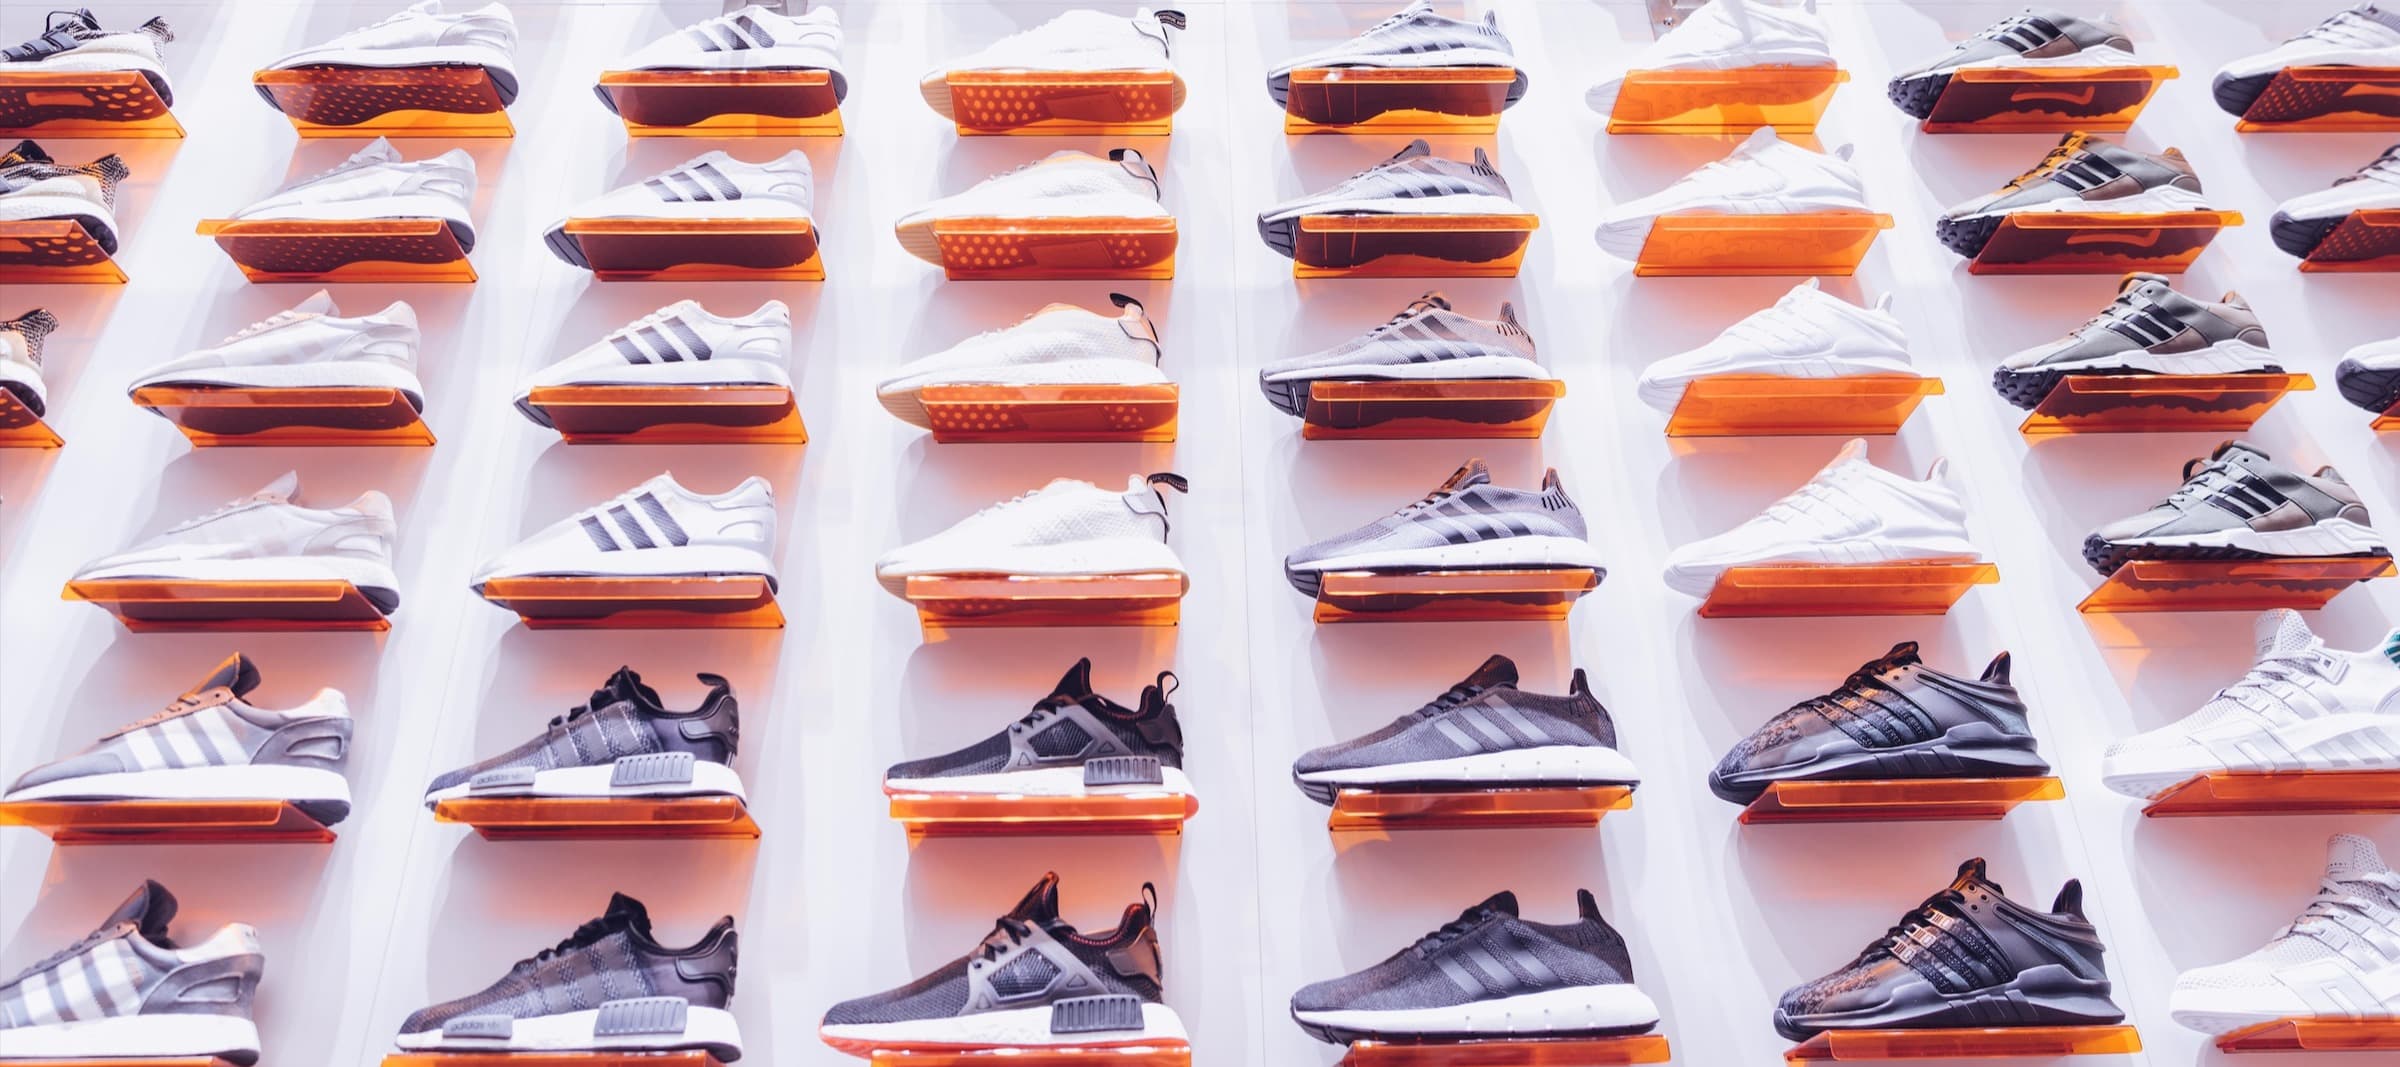 Фото новости: "Дистрибутор Lestate откроет сеть магазинов с товарами Adidas и Reebok"